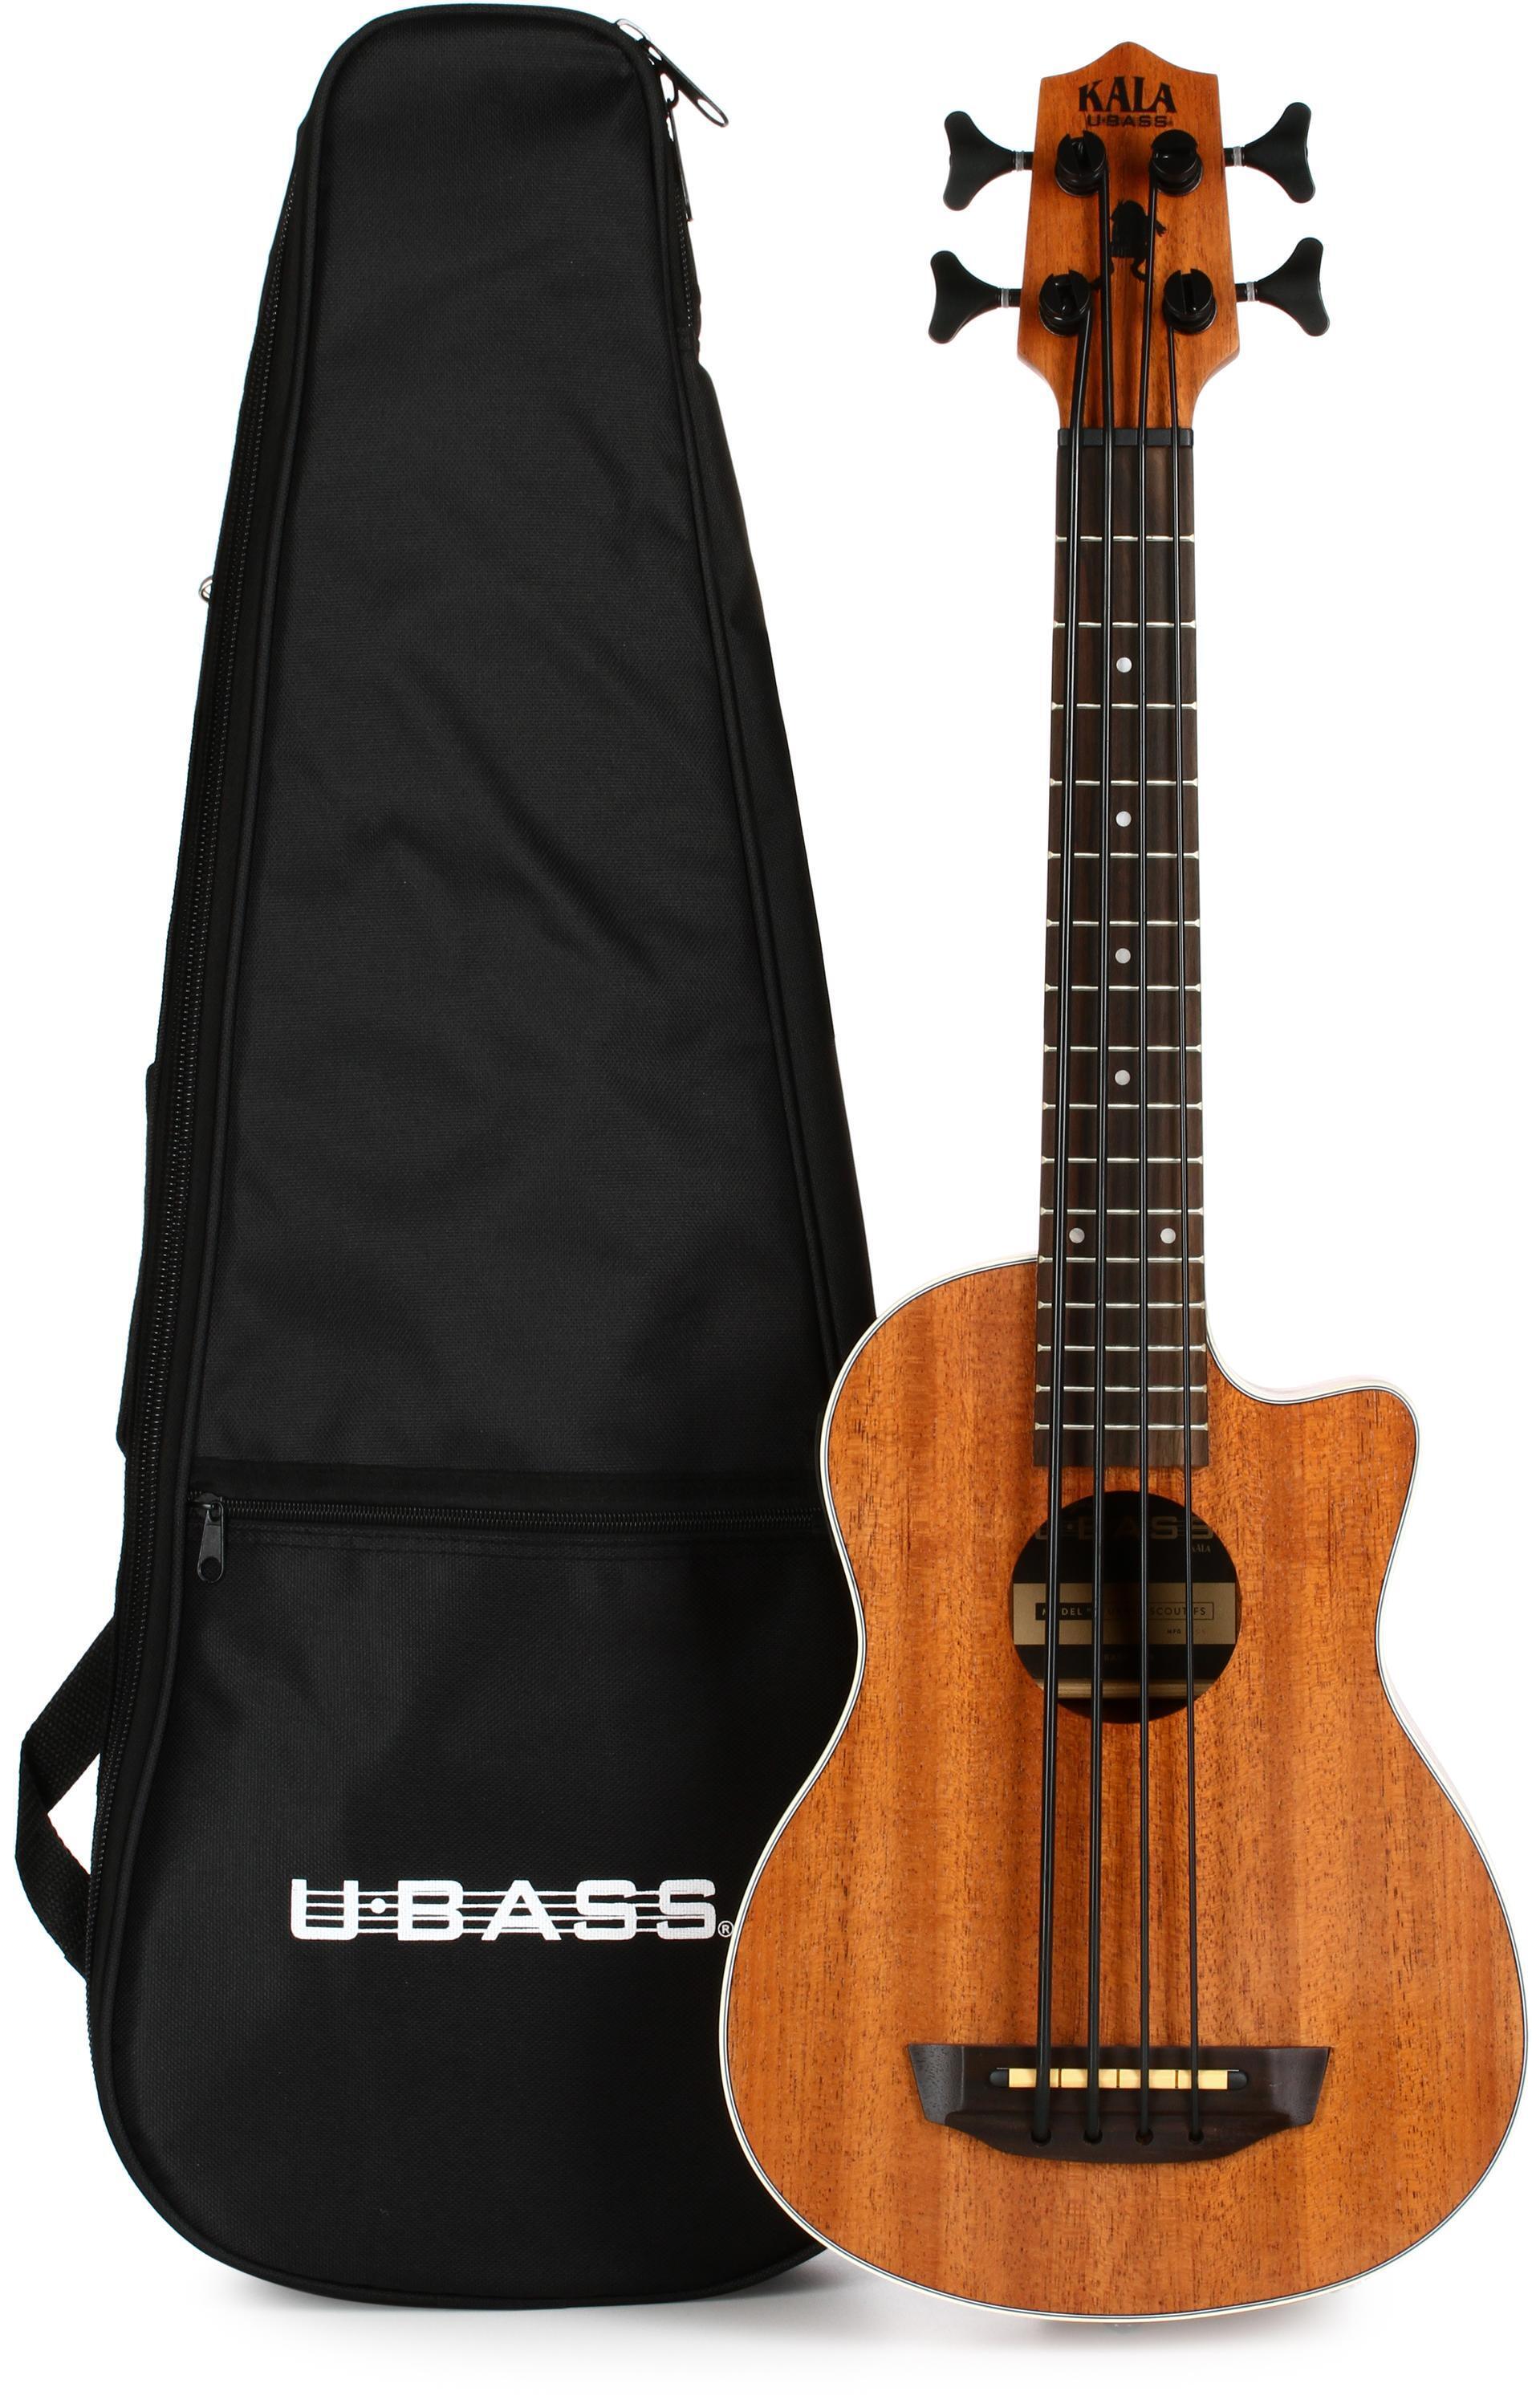 Bundled Item: Kala U-Bass Scout, Mahogany Acoustic-Electric Bass Guitar - Natural Satin